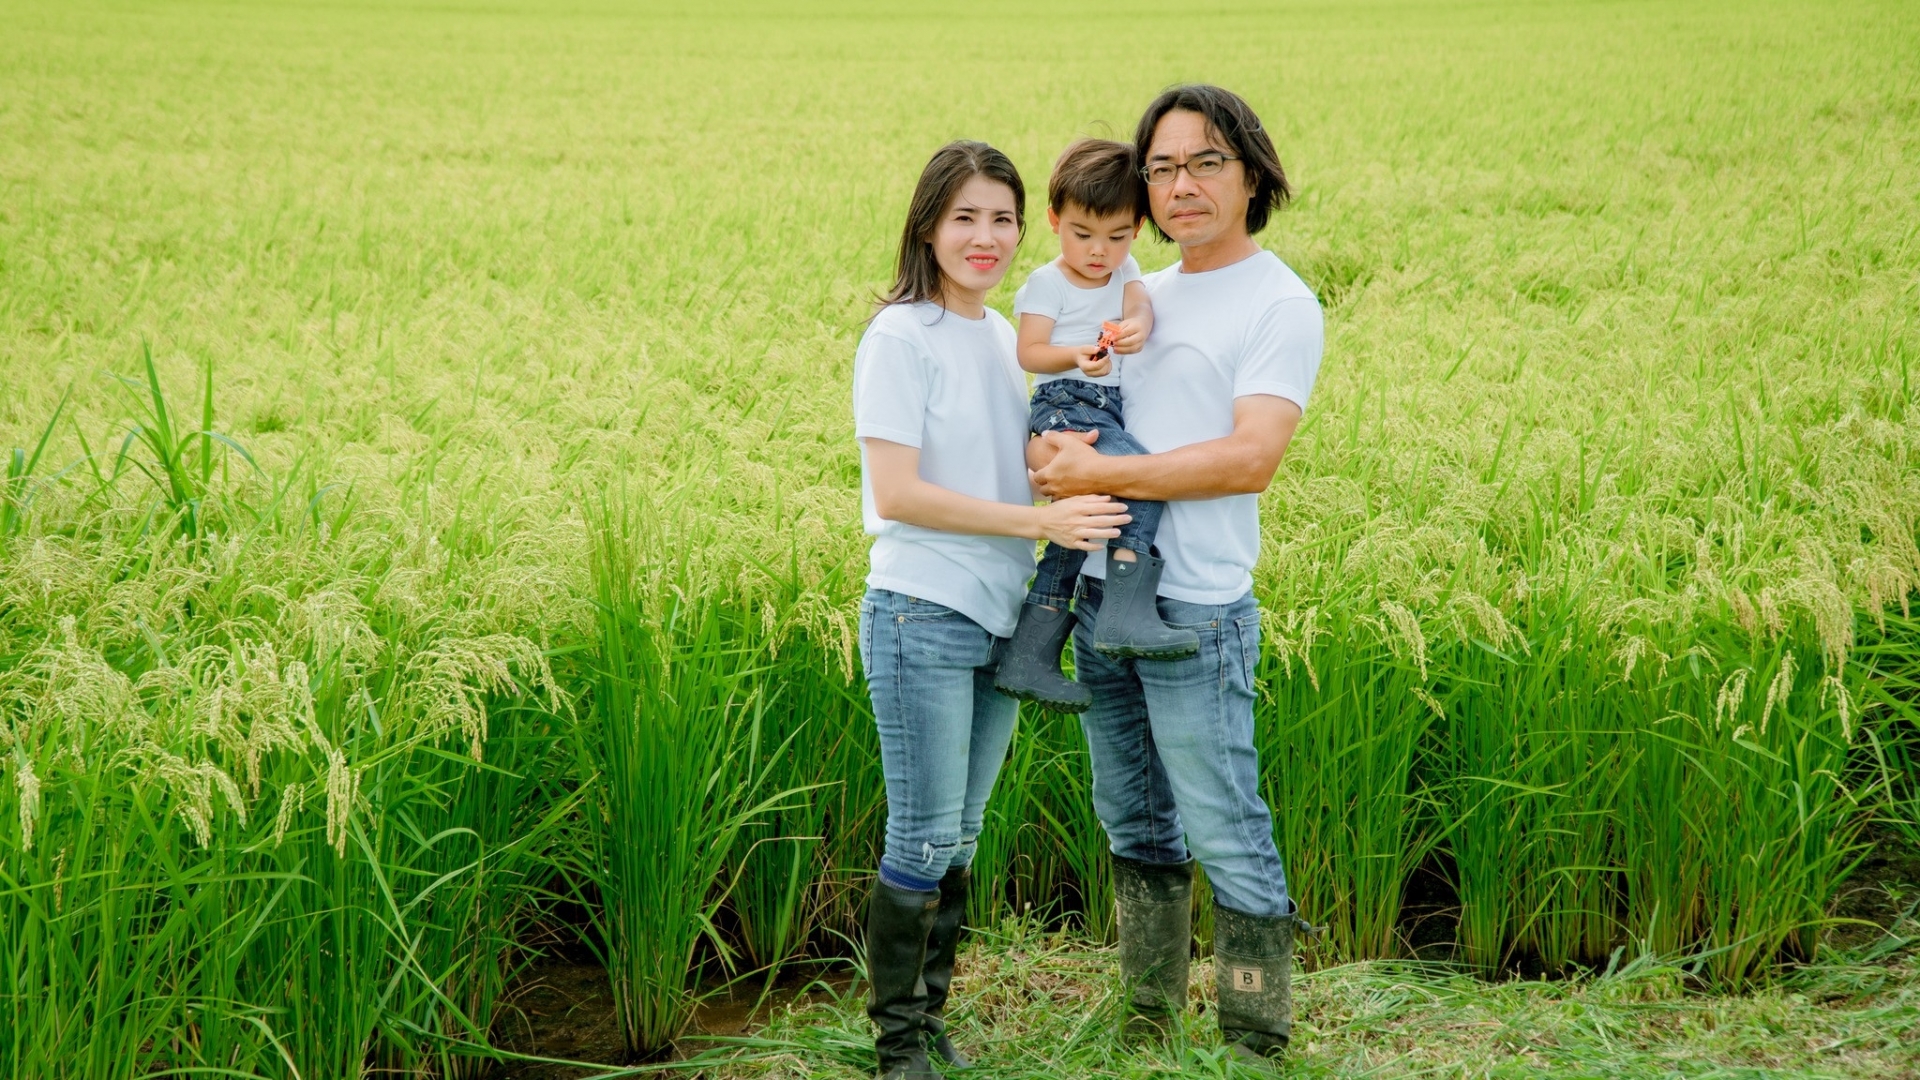 裴小姐和她的丈夫忙于季节性农业工作，所以他们必须依靠婆婆来照顾儿子。